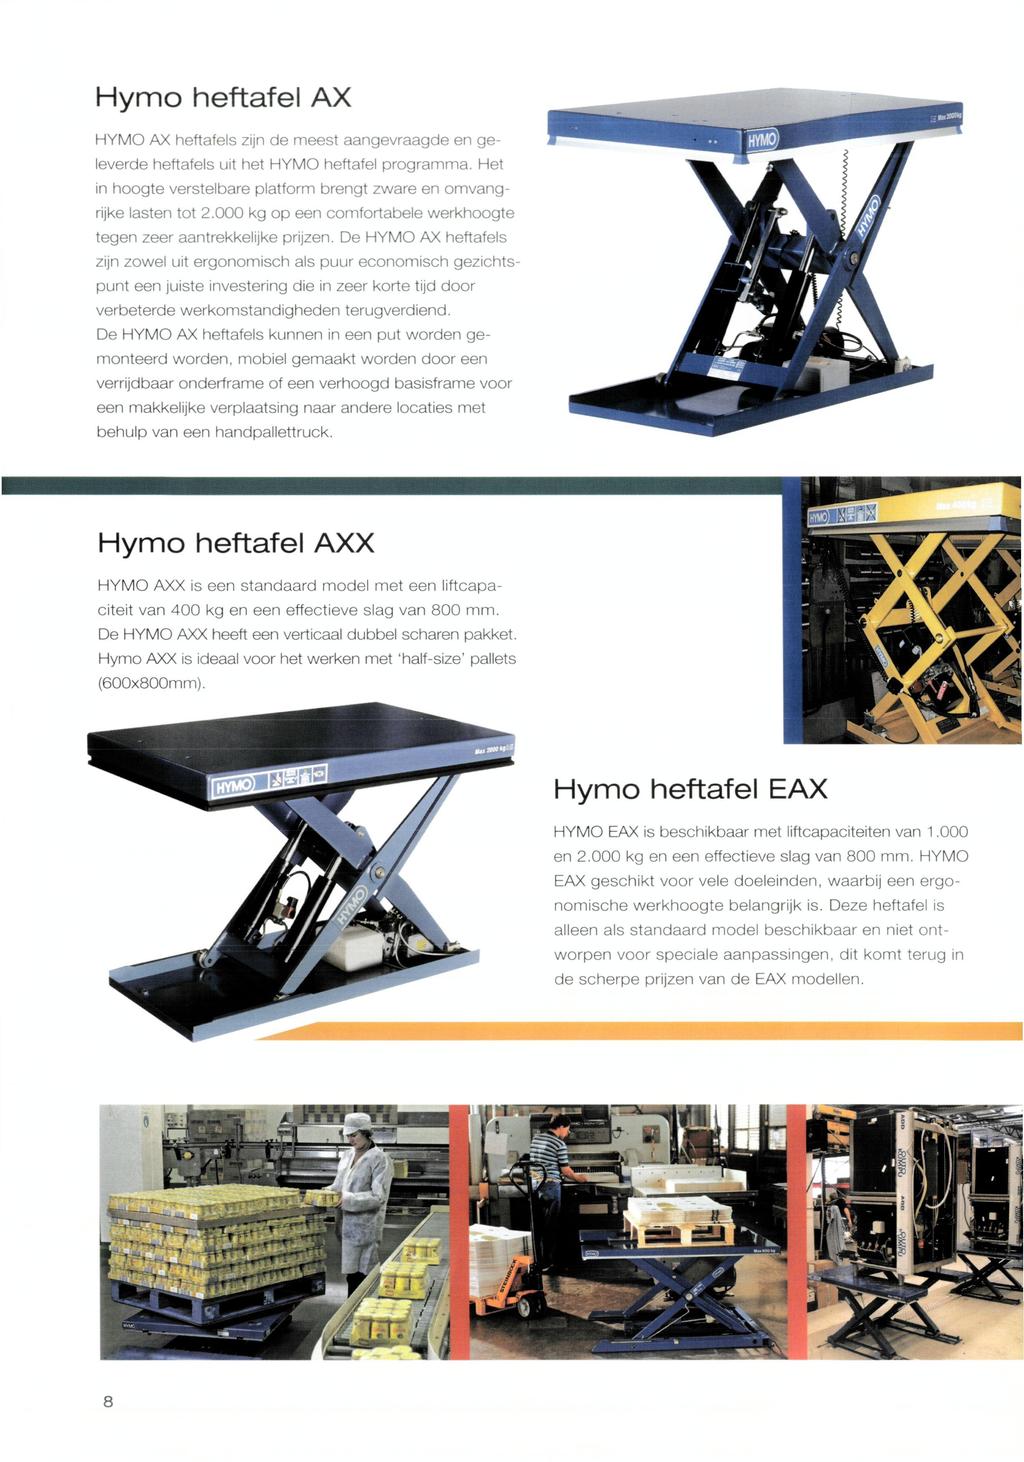 Hymo heftafel AX HYMO AX heftafels zijn de meest aangevraagde en geleverde heftafels uit het HYMO heftafel programma. Het in hoogte verstelbare platform brengt zware en omvangrijke lasten tot 2.